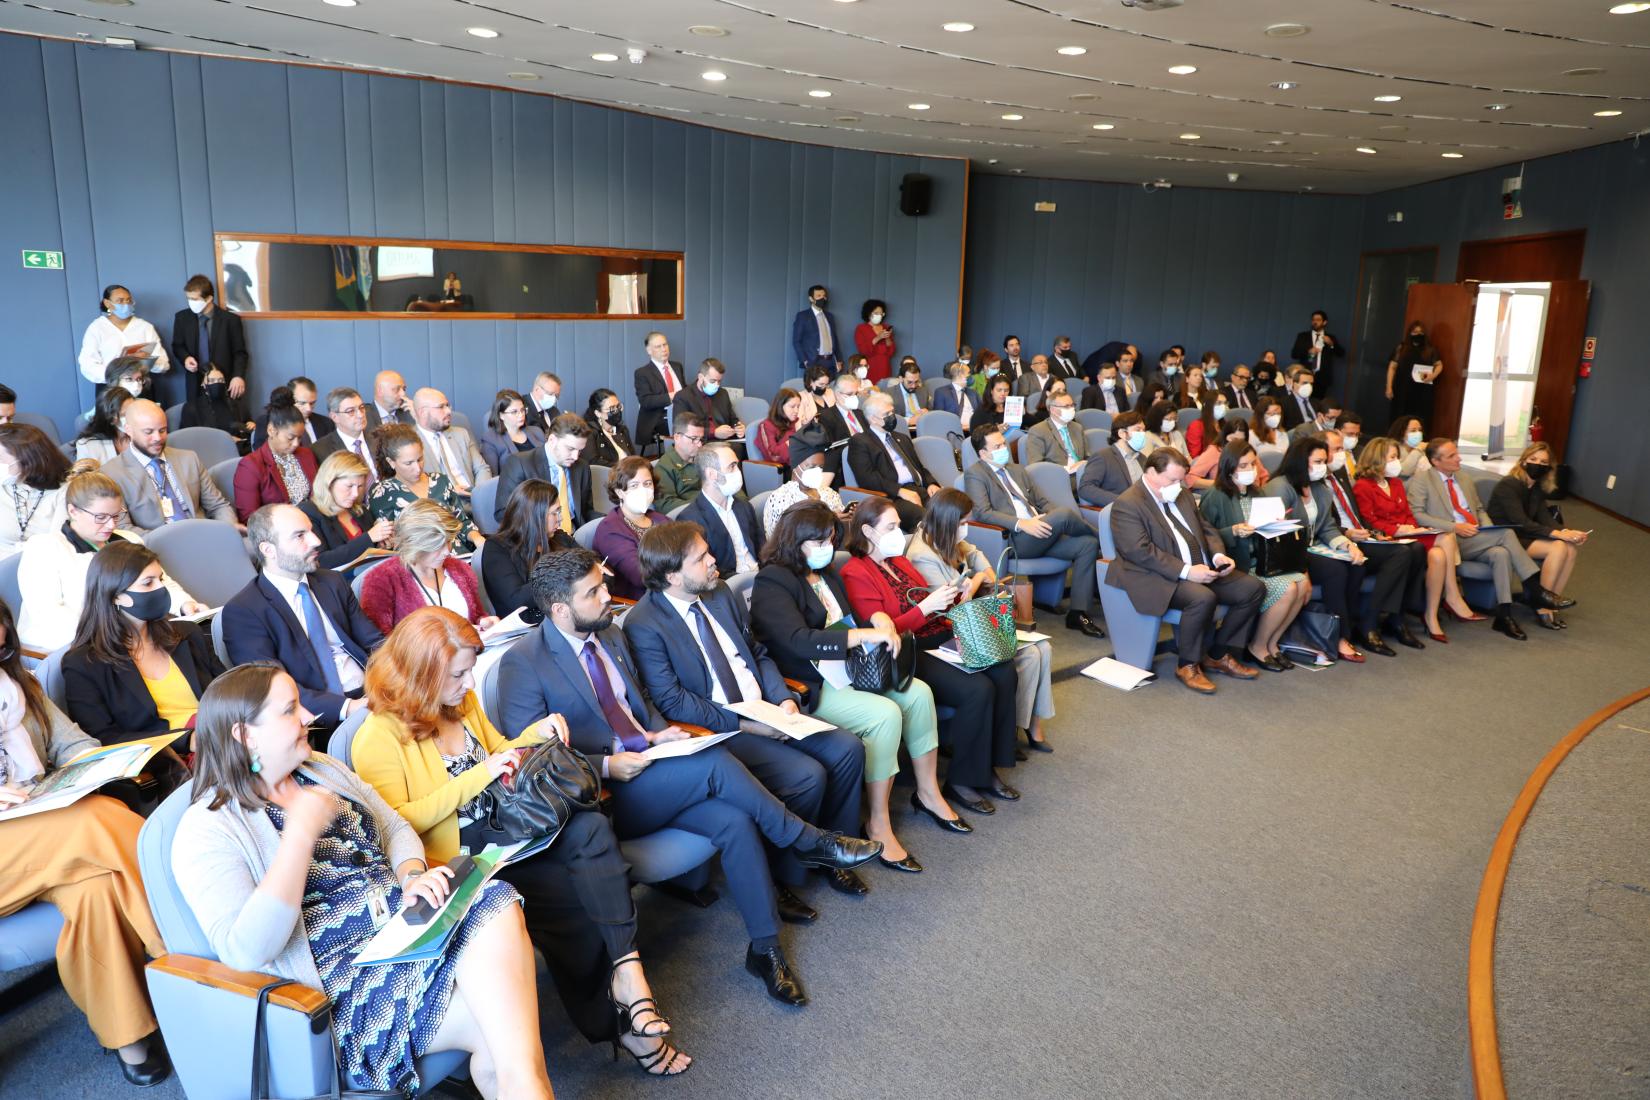 Mais de 100 pessoas, representantes dos poderes Executivo, Legislativo e Judiciário, estiveram no evento de lançamento do processo de elaboração do novo Marco de Cooperação da ONU.